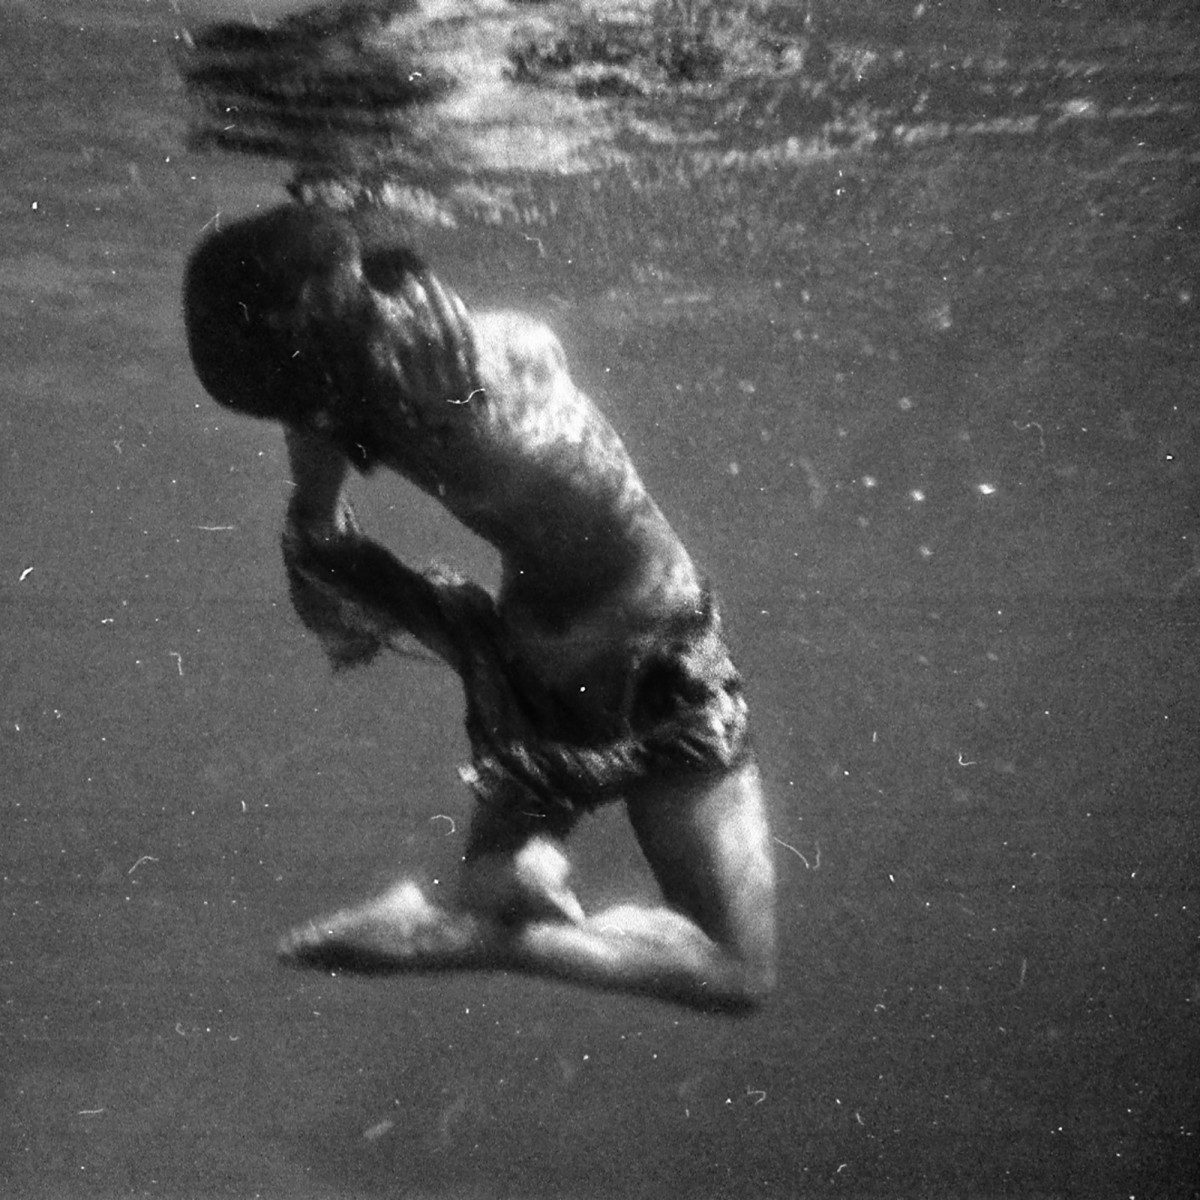 Underwater ballet B&W negative